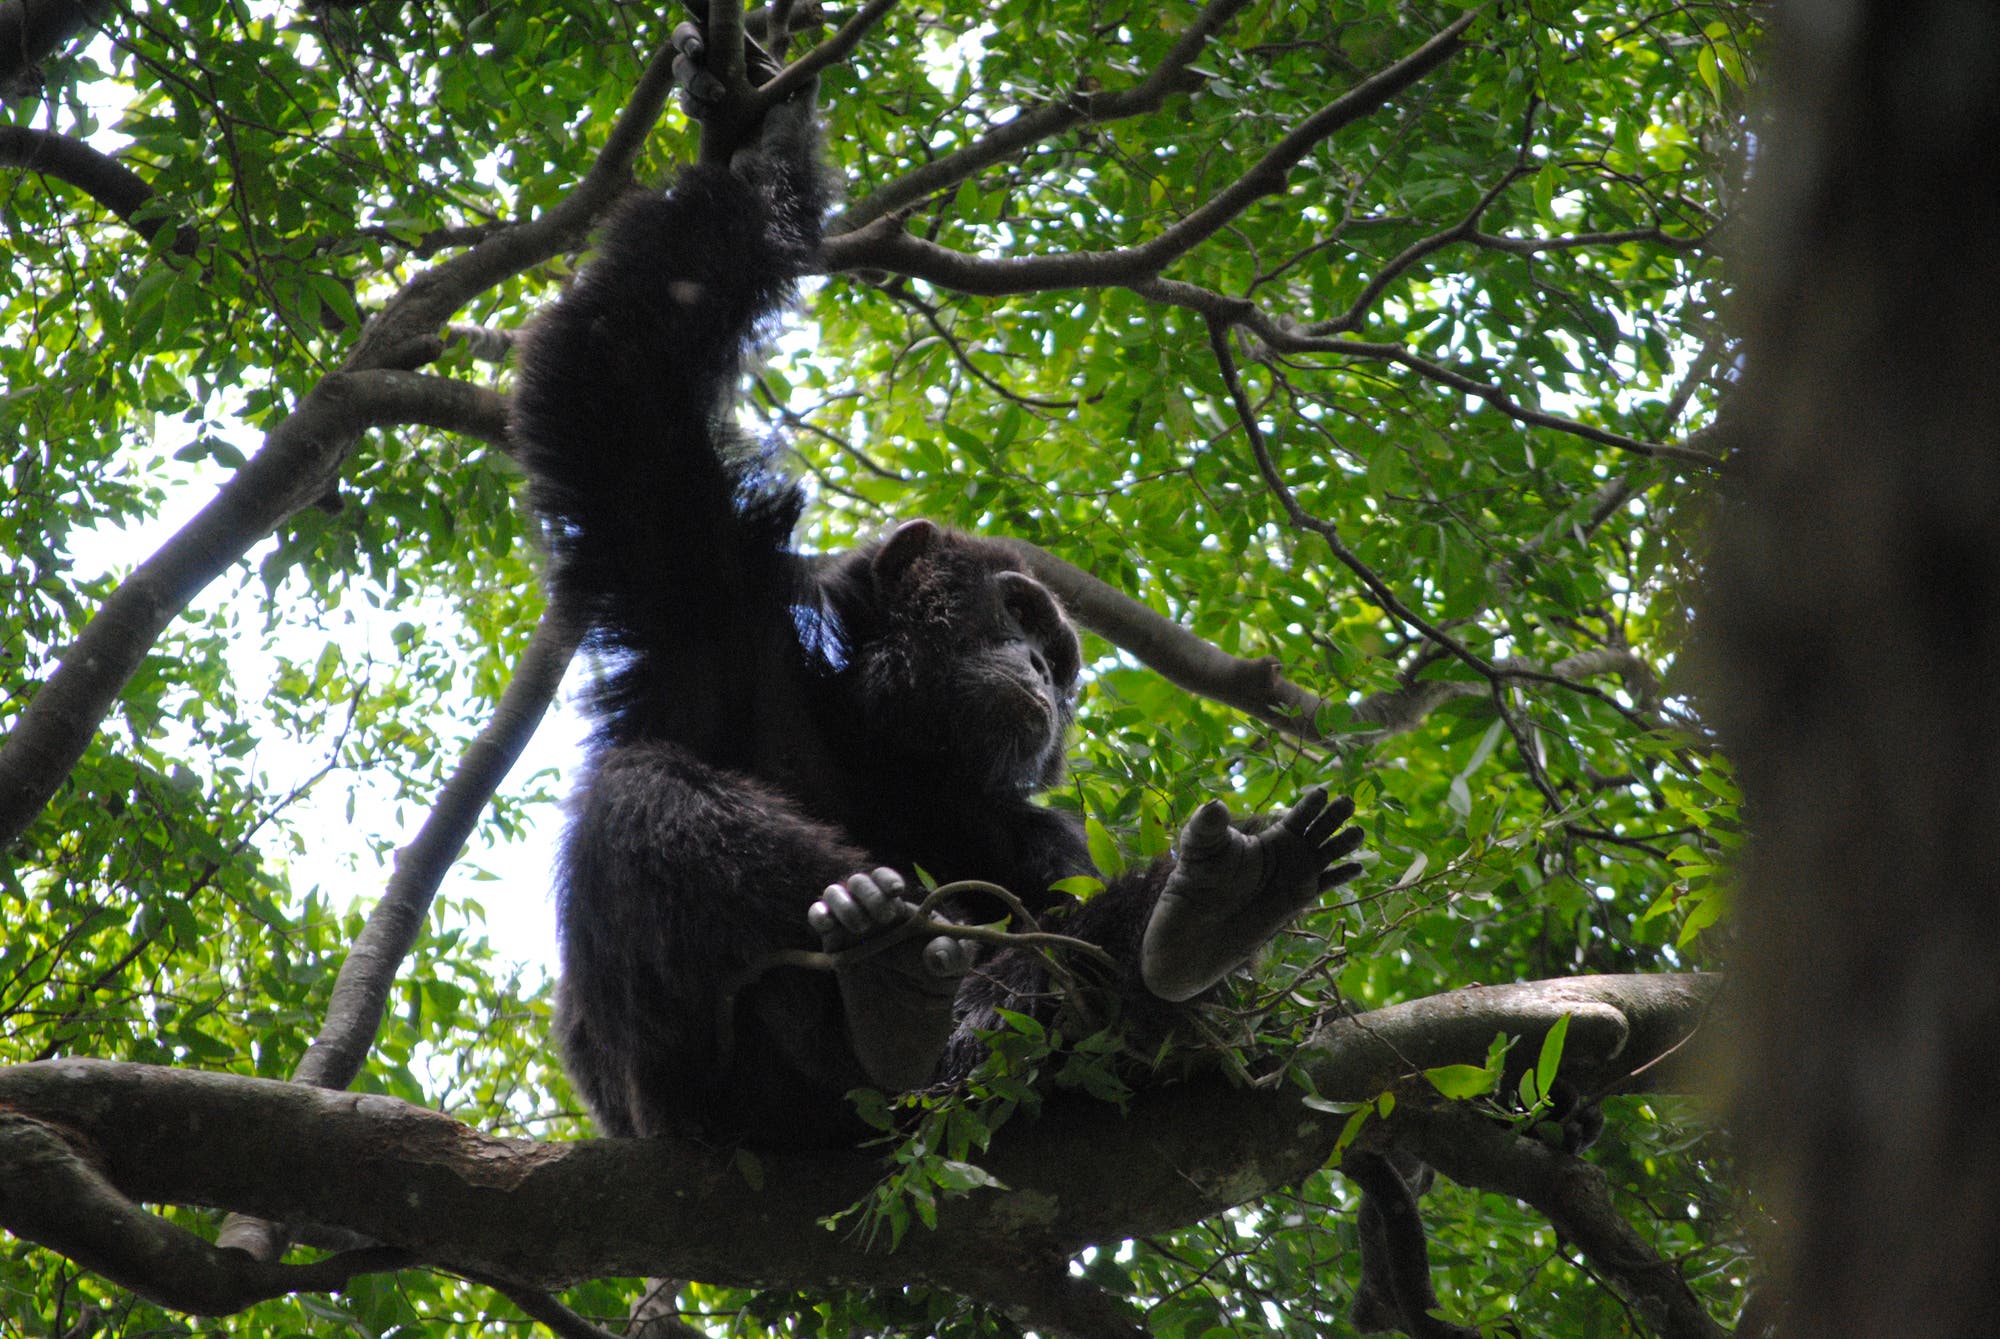 Schimpansen mögen es luftig und stabil